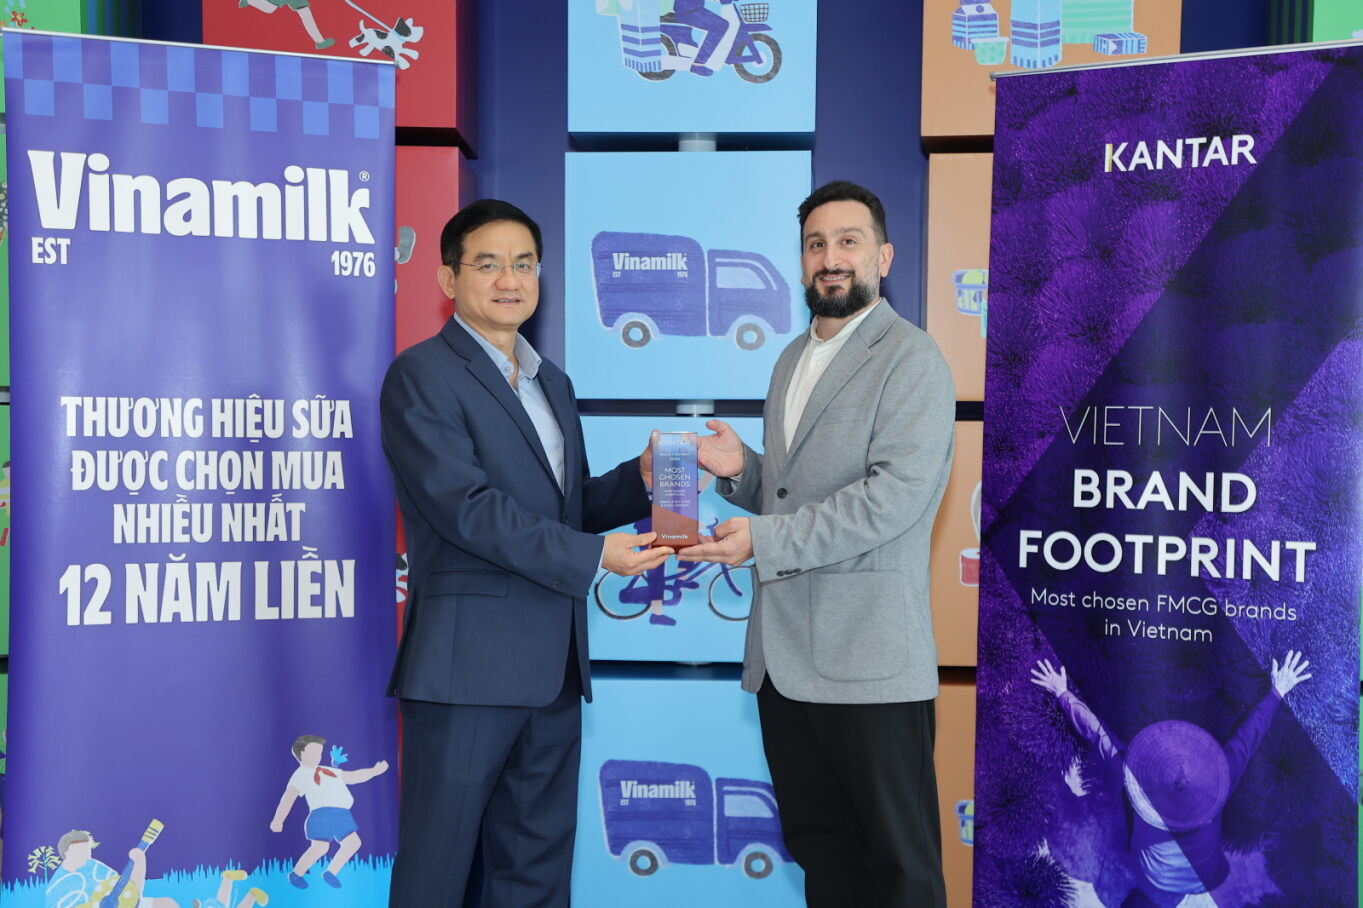 Đại diện Kantar Việt Nam (bên phải) trao các chứng nhận cho ông Nguyễn Quang Trí, Giám đốc điều hành Marketing Vinamilk. Ảnh: Vinamilk